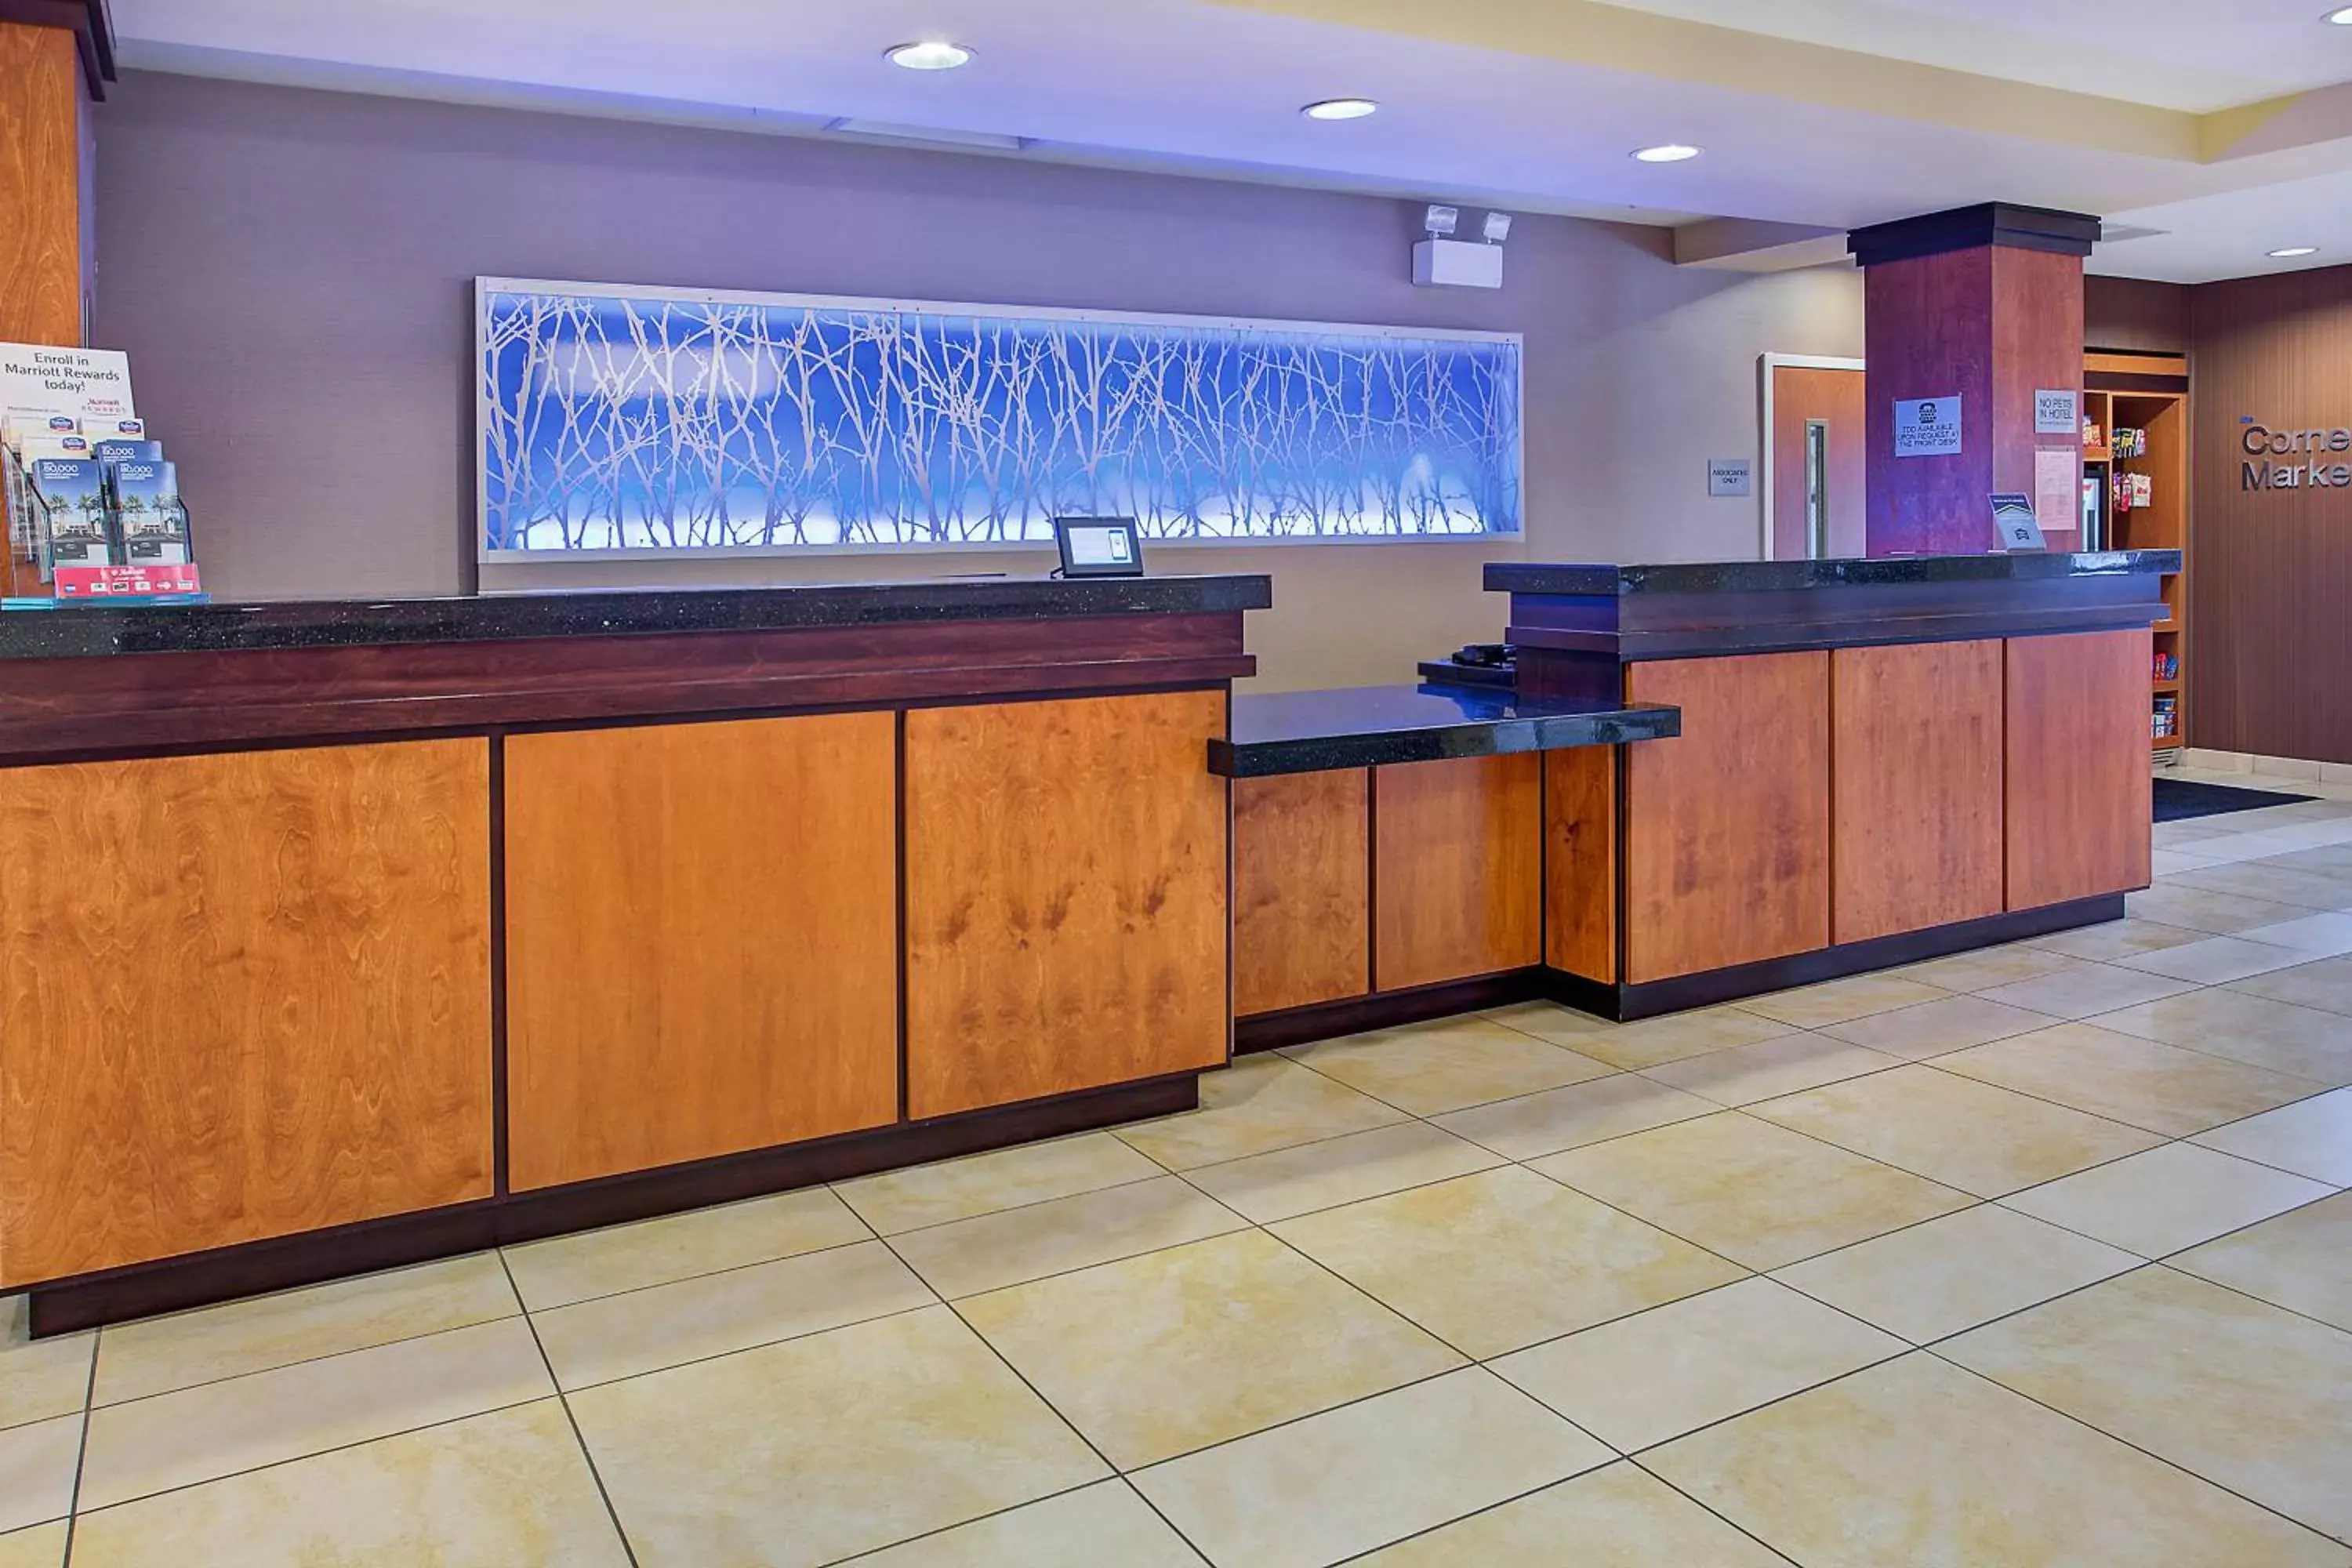 Lobby or reception, Lobby/Reception in Fairfield Inn & Suites Kodak